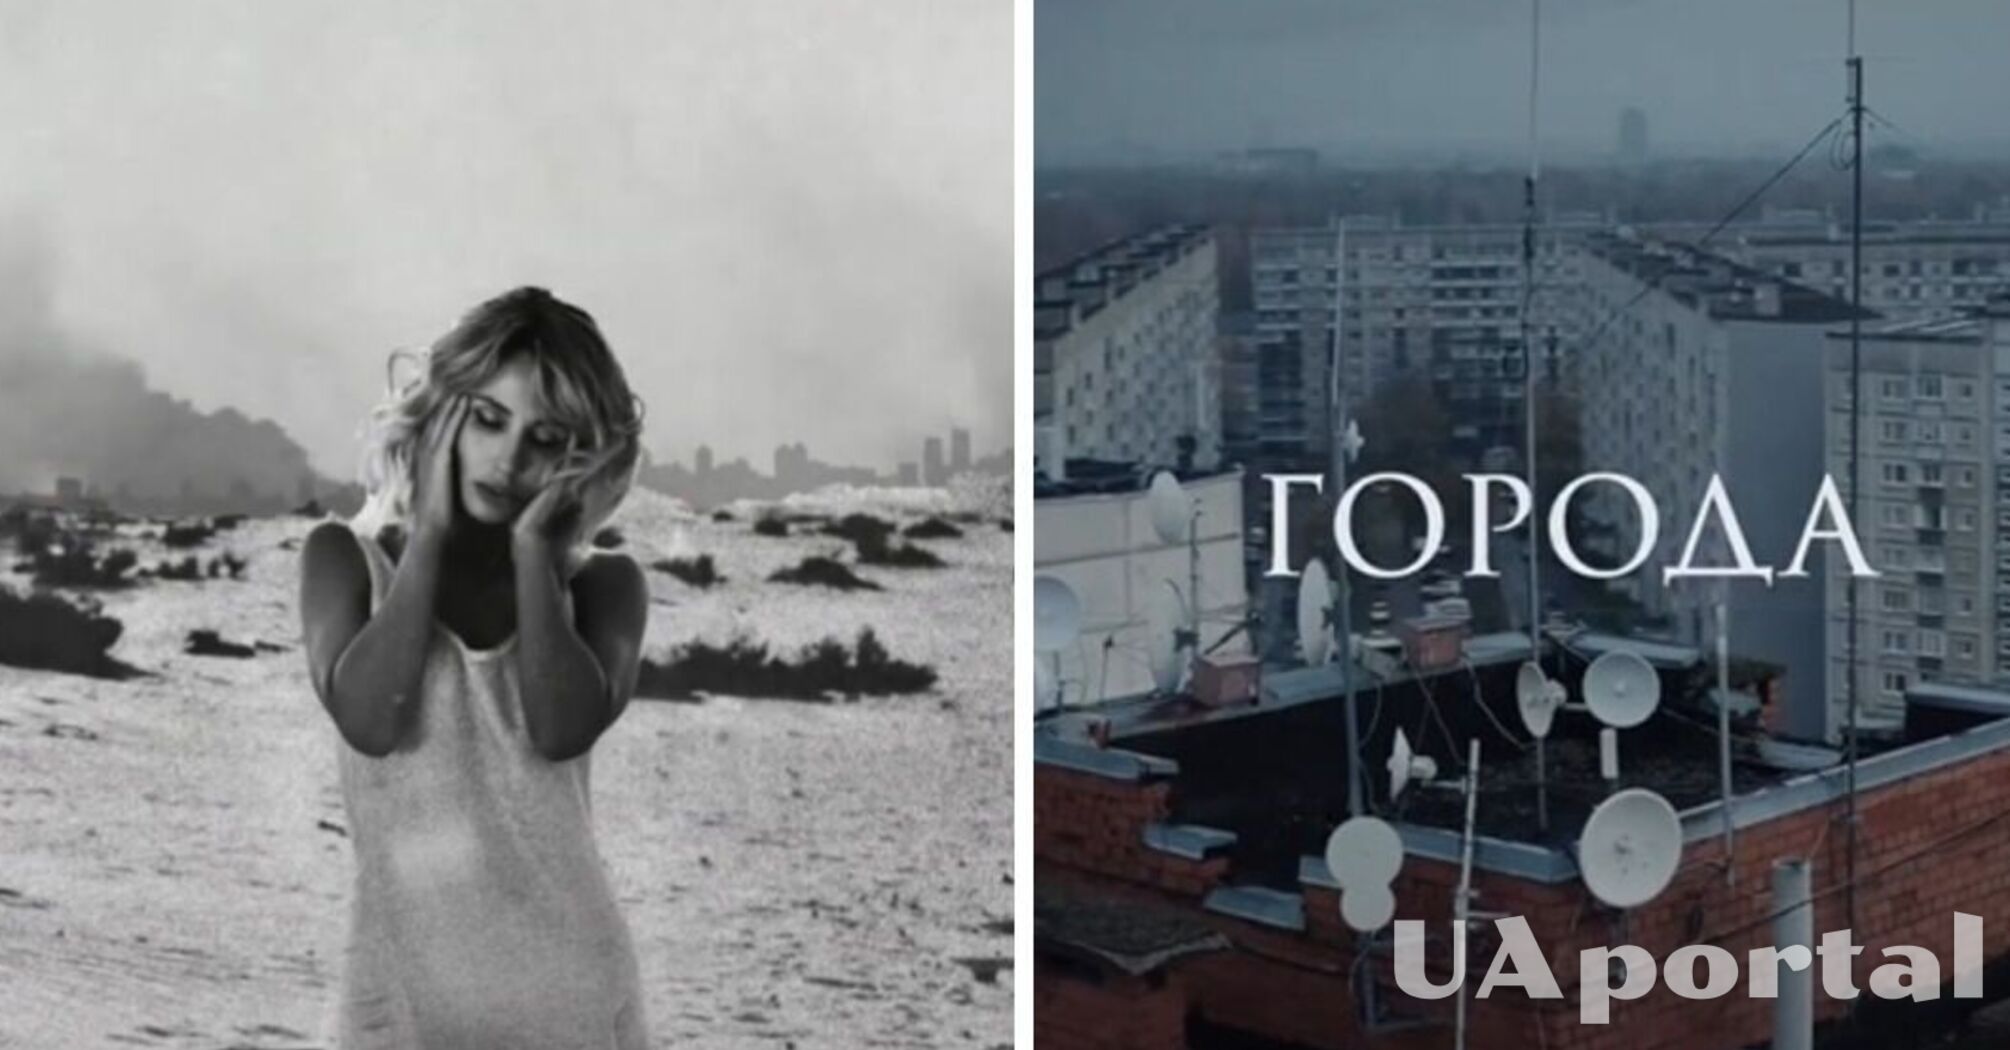 Loboda повернулась до російськомовної творчості і випустила нову пісню 'Города'